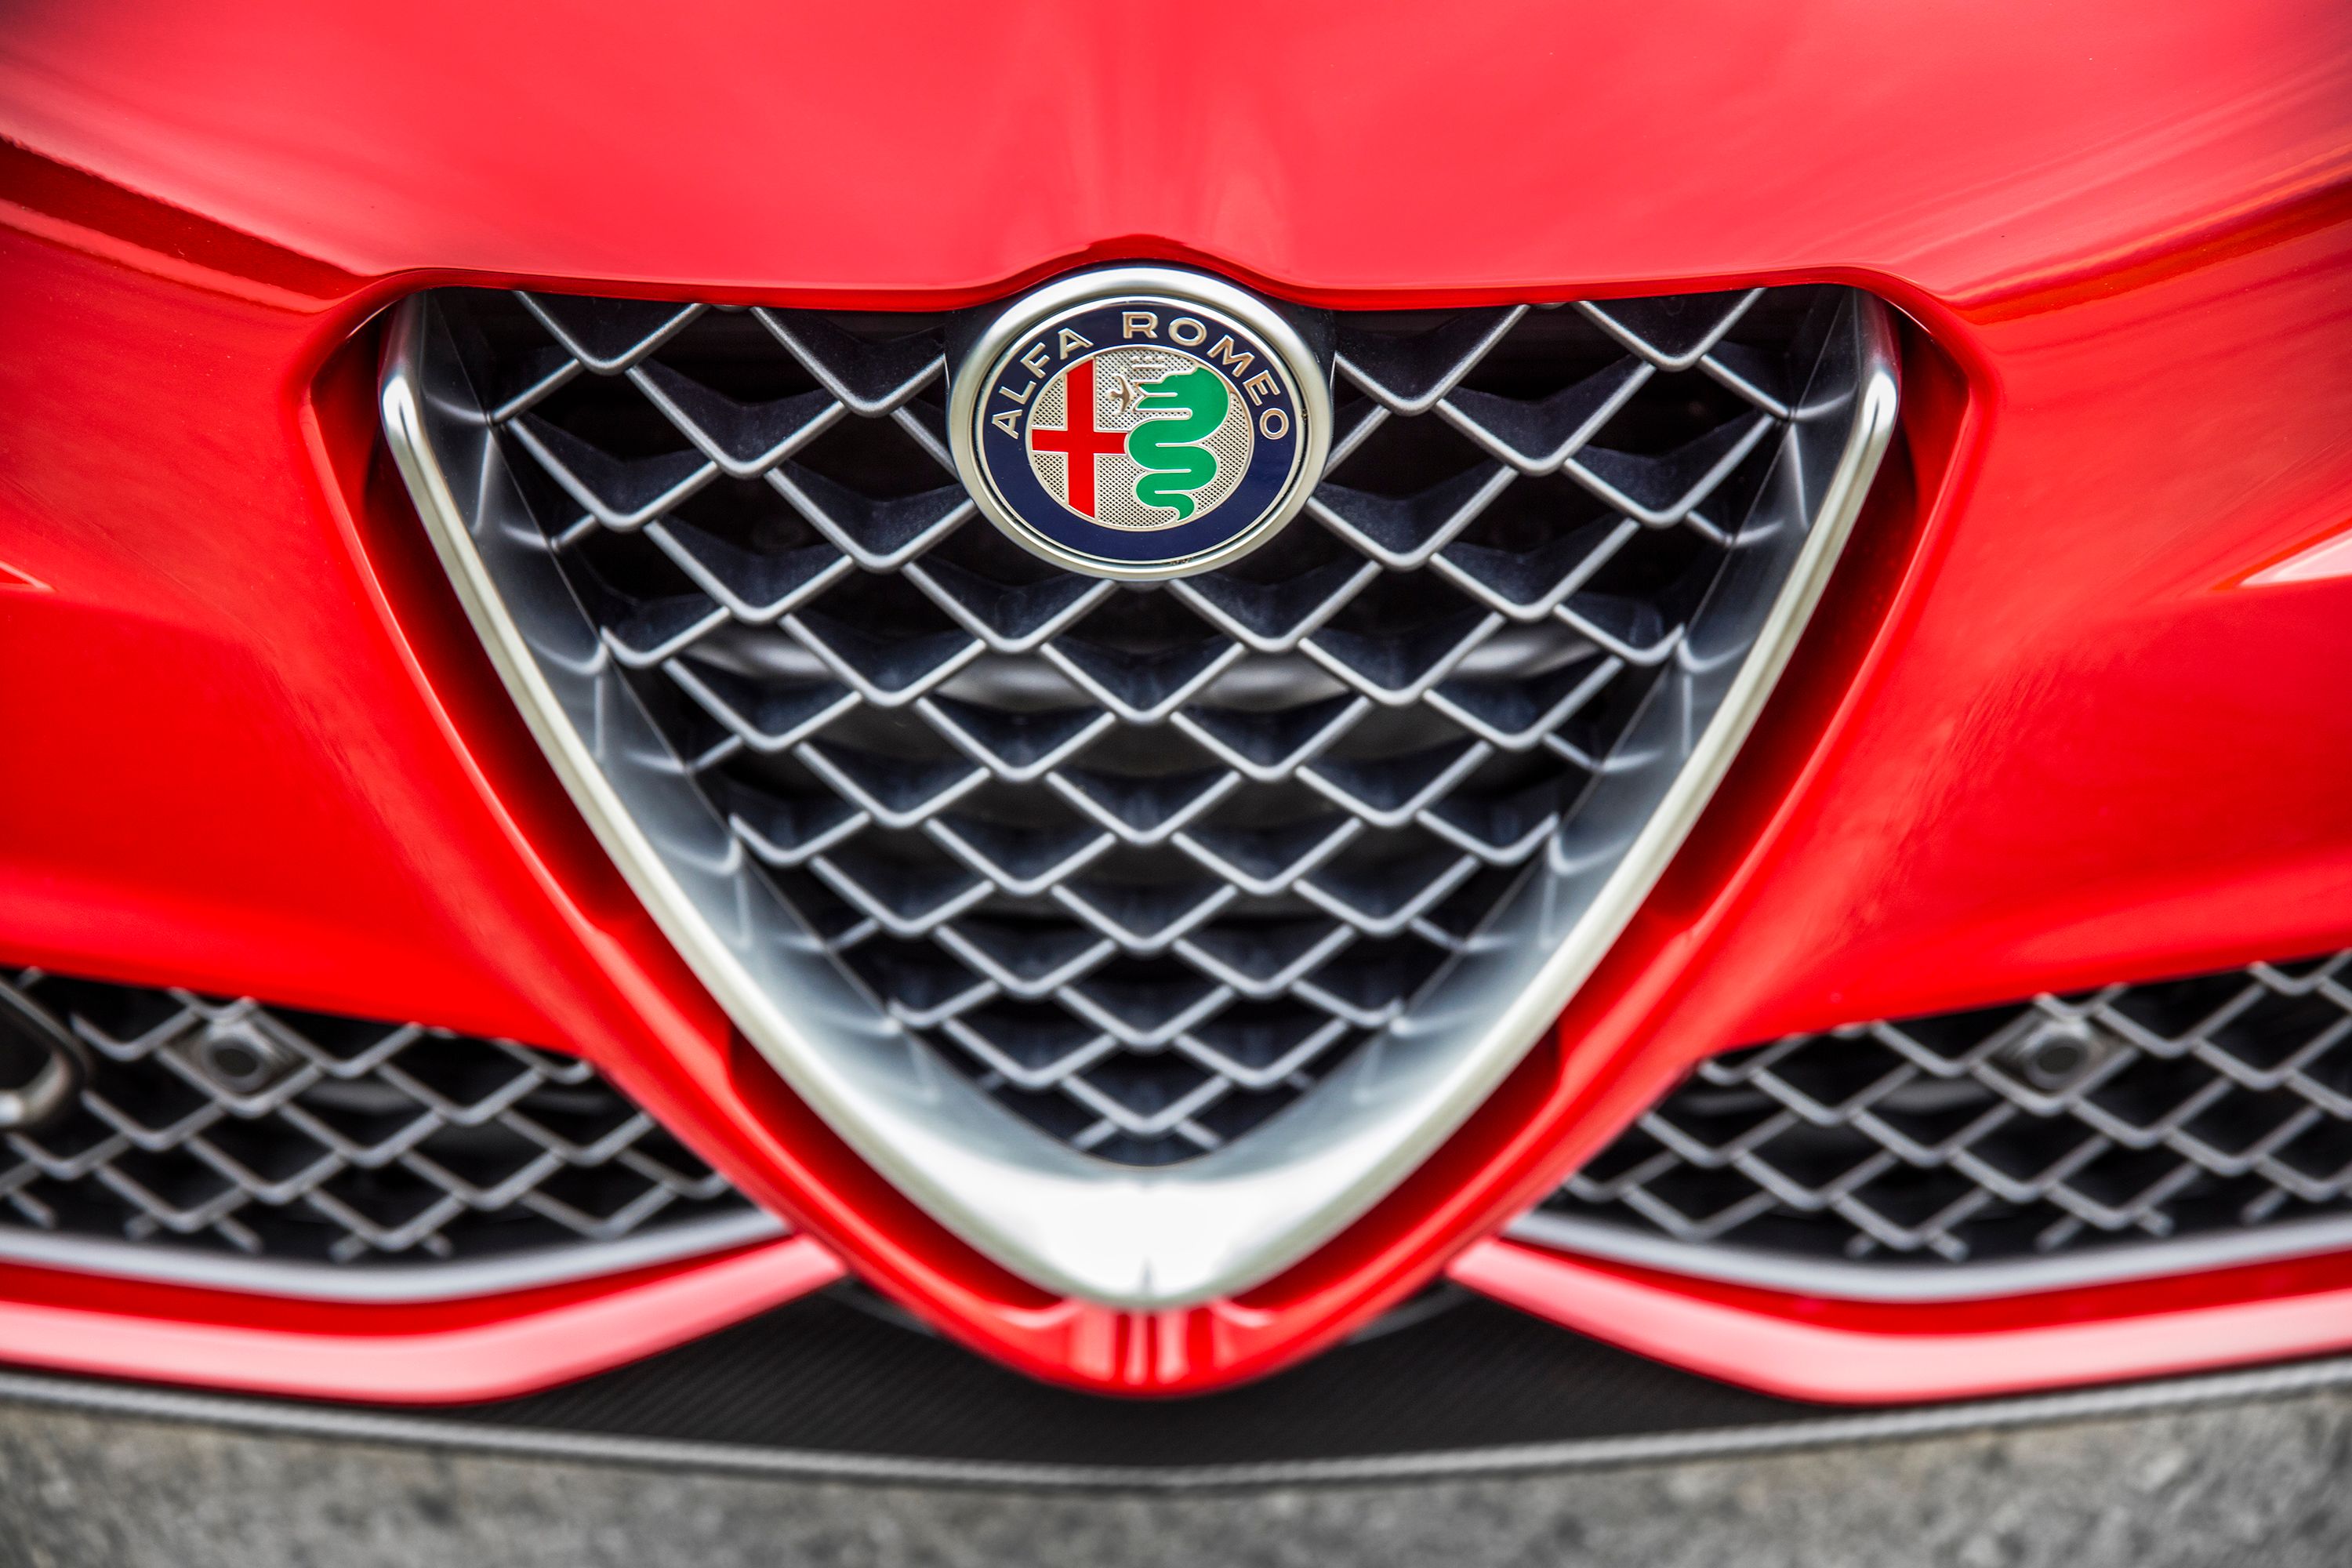 2019 - 2020  I Configured the 2019 Alfa Romeo Giulia Quadrifoglio NRing Edition and Saved 9 Grand